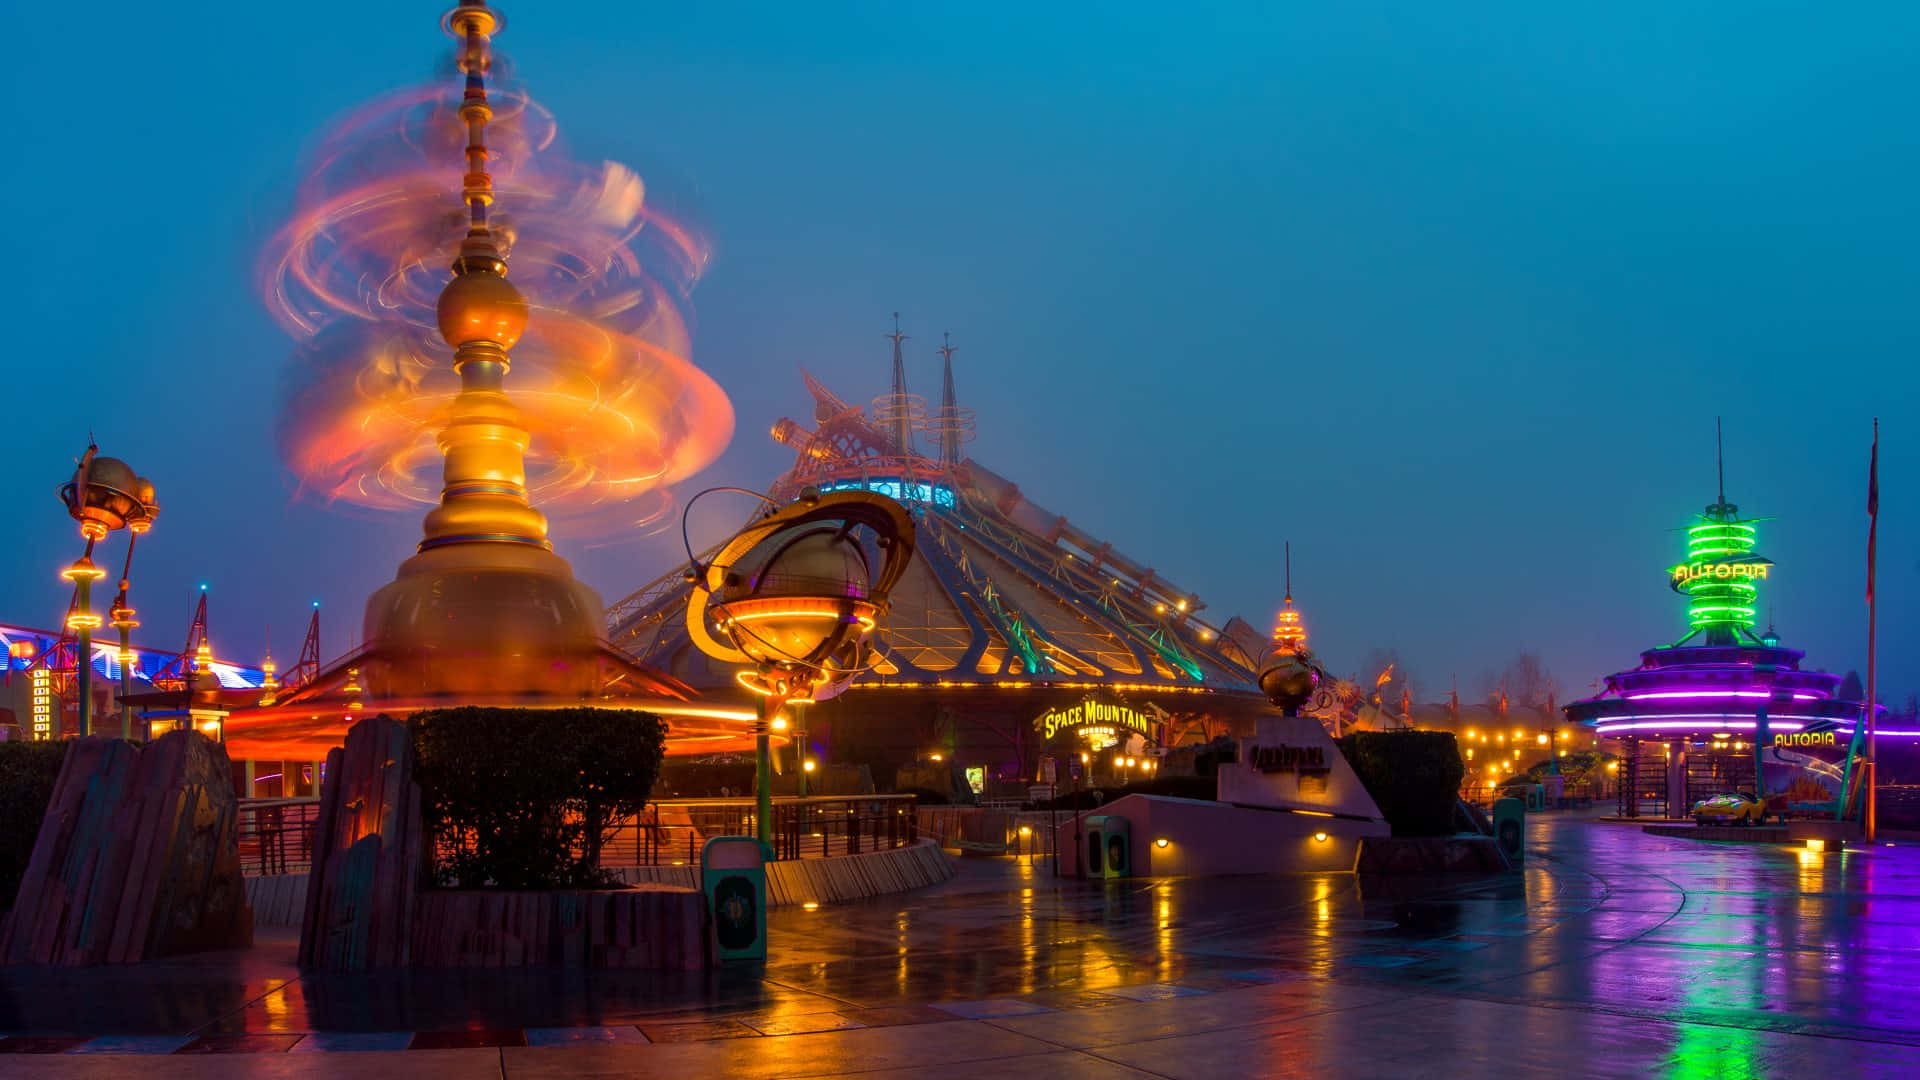 Star Wars Hyperspace Rollercoaster In Disneyland Paris Wallpaper